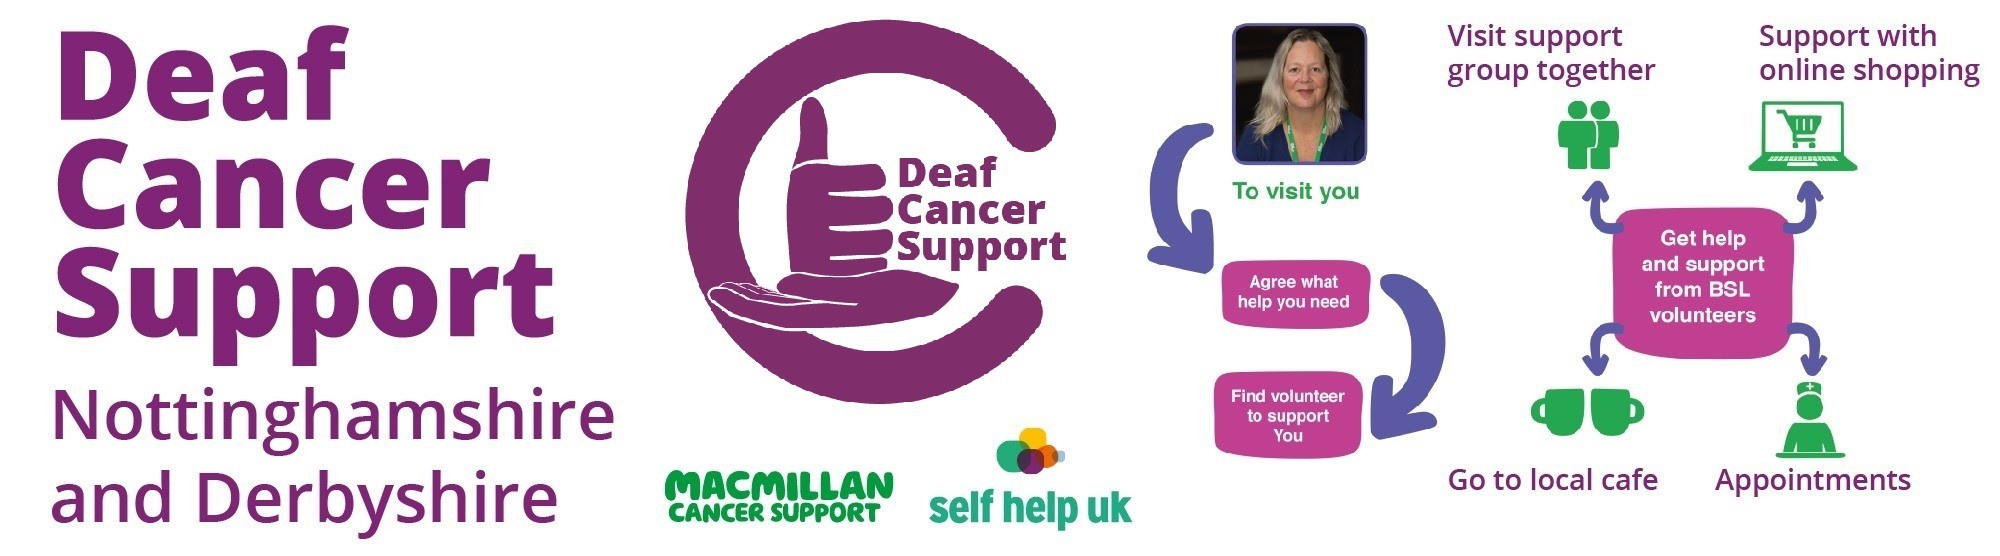 Deaf Cancer Support